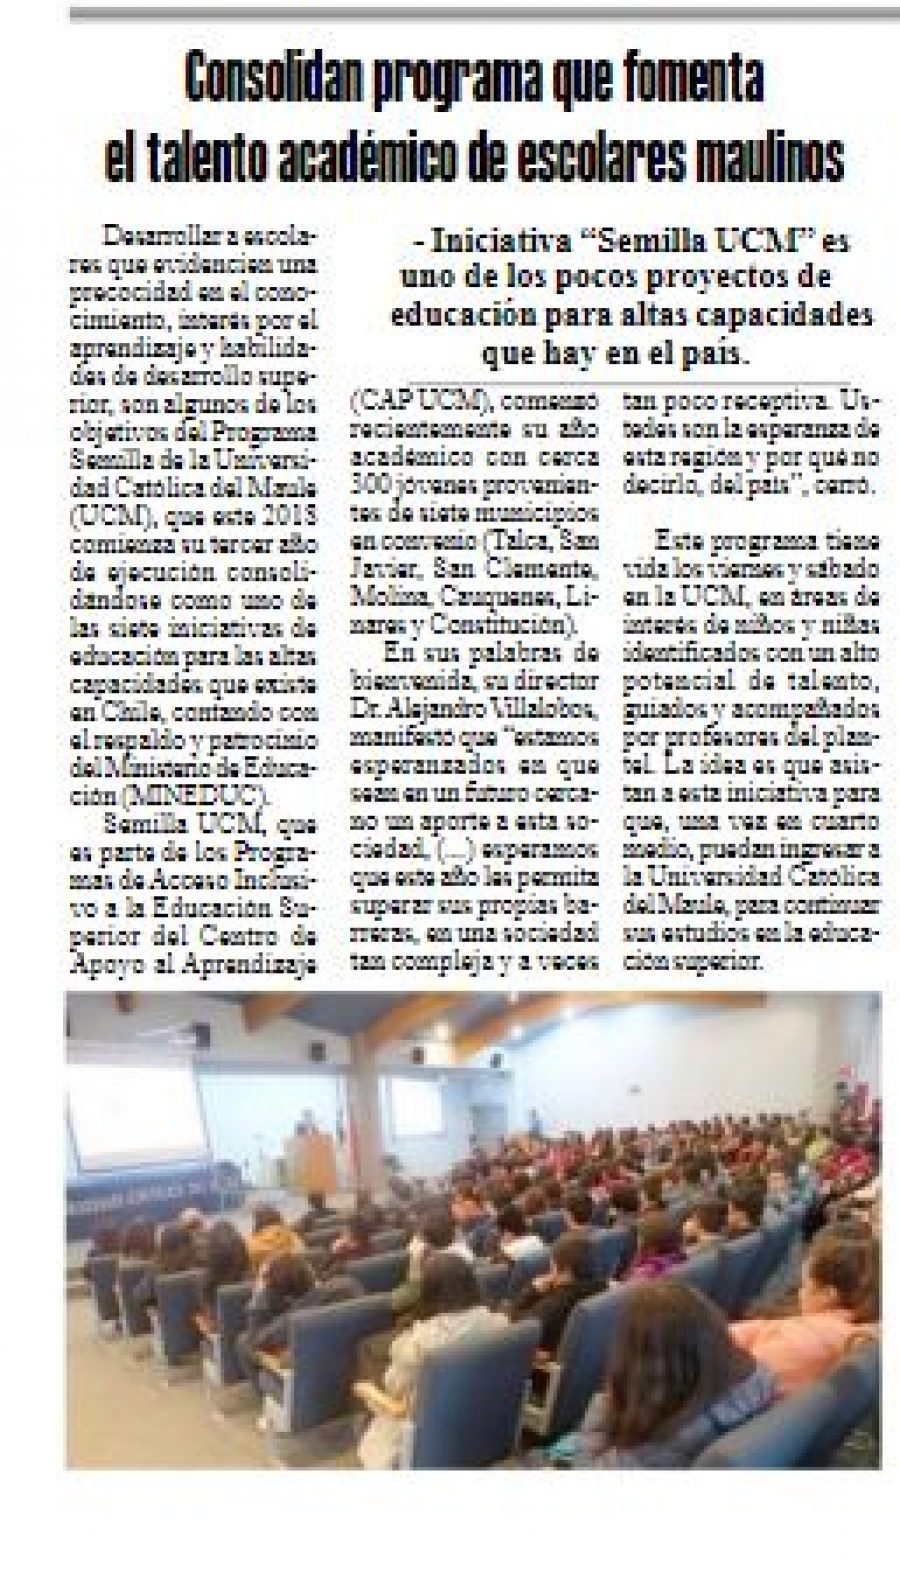 22 de marzo en Diario El Heraldo: “Consolidan programa que fomenta el talento académico de escolares maulinos”